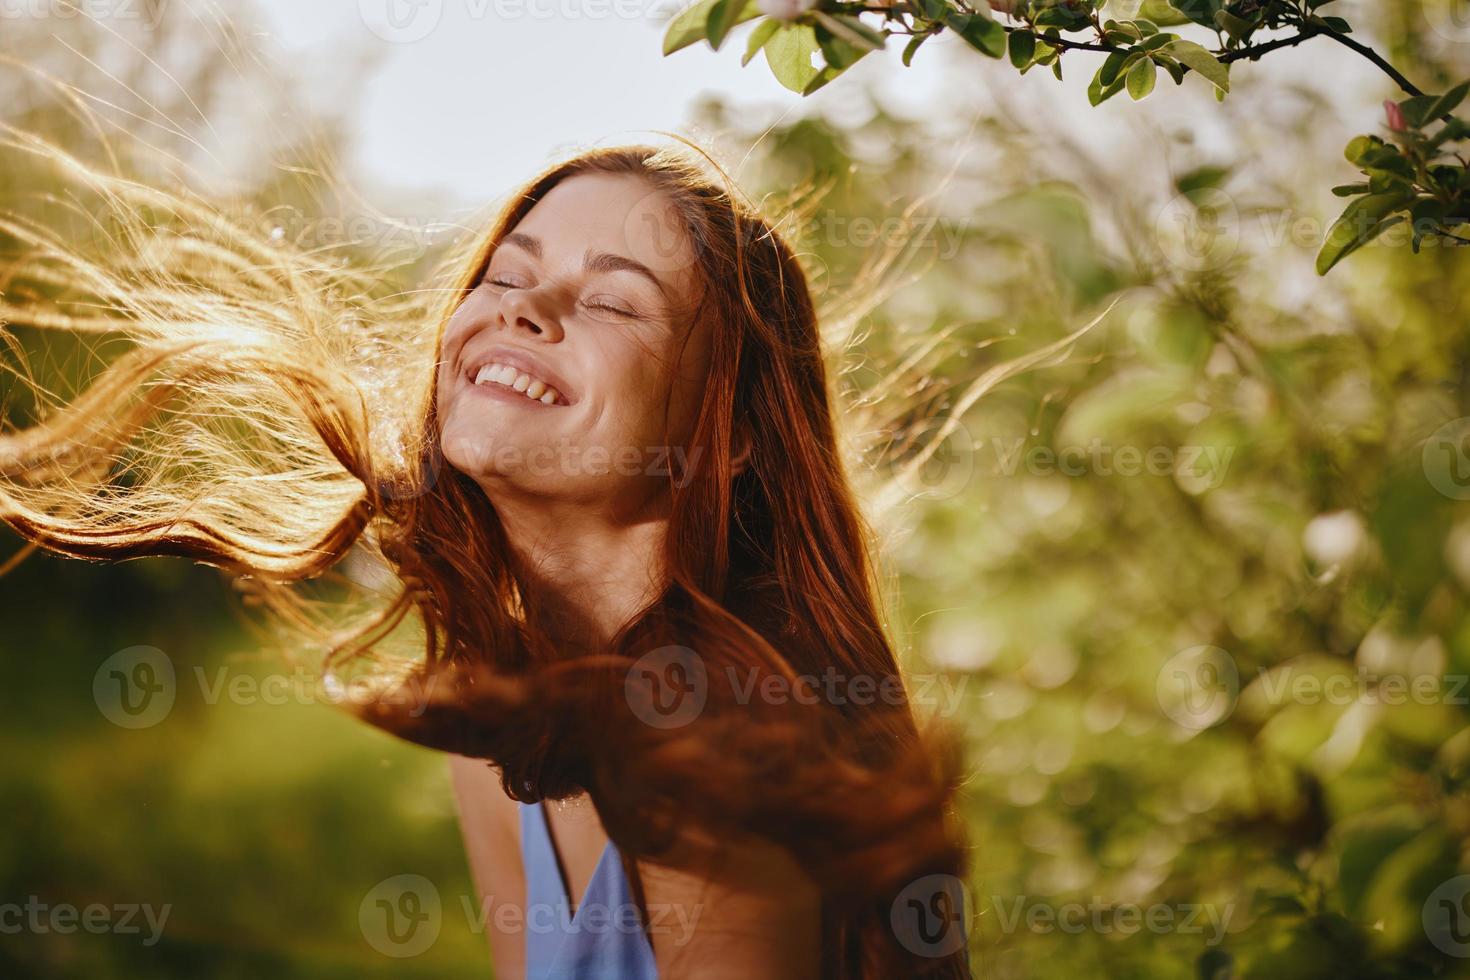 portrait de une femme avec longue s'envoler cheveux rouge cheveux dans été, le concept de santé et se soucier pour longue épais cheveux beauté photo